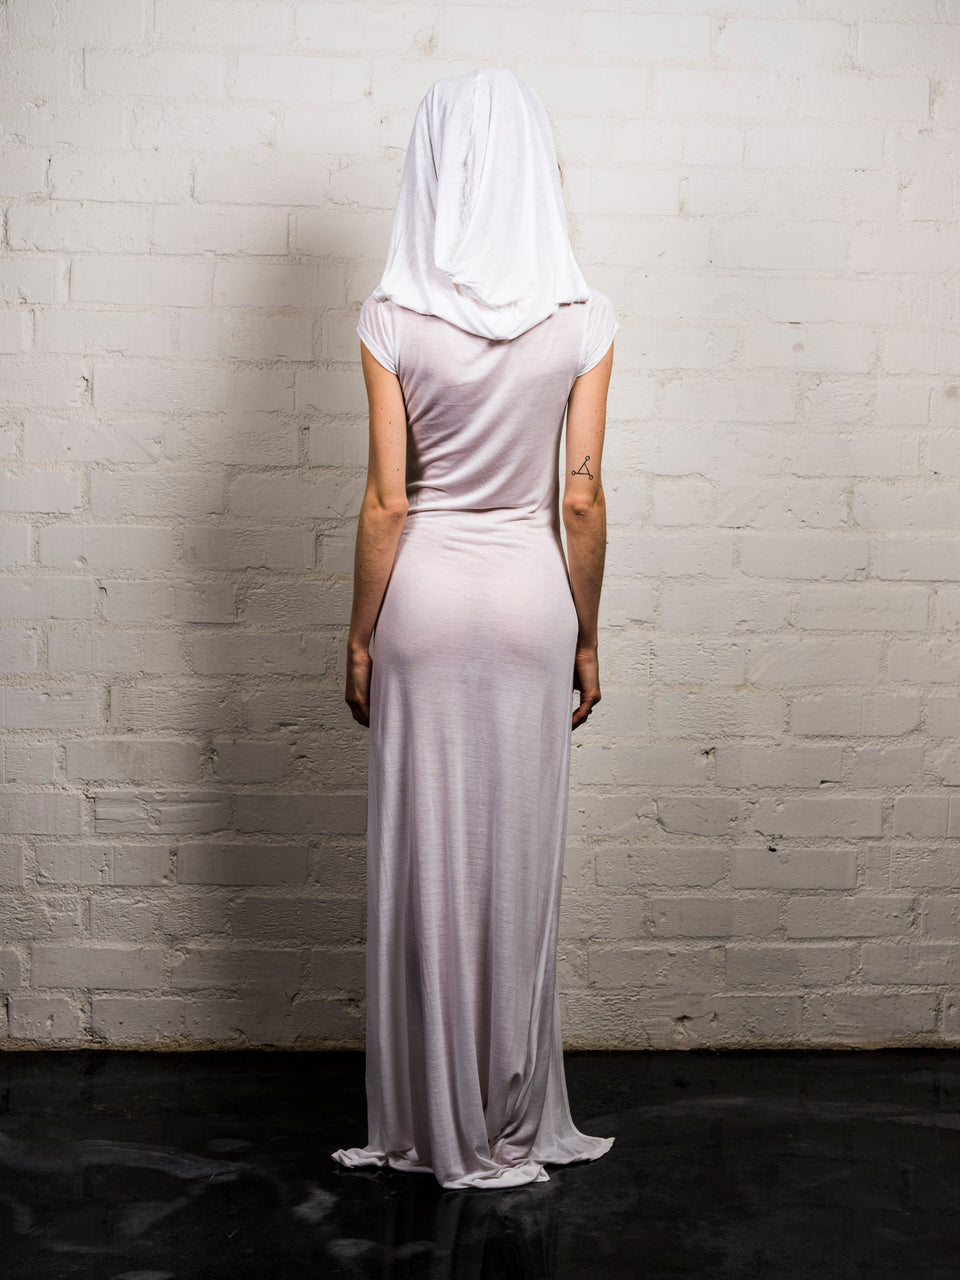 Short Sleeve Scoop Neck Dress with Hood - Illuminated White